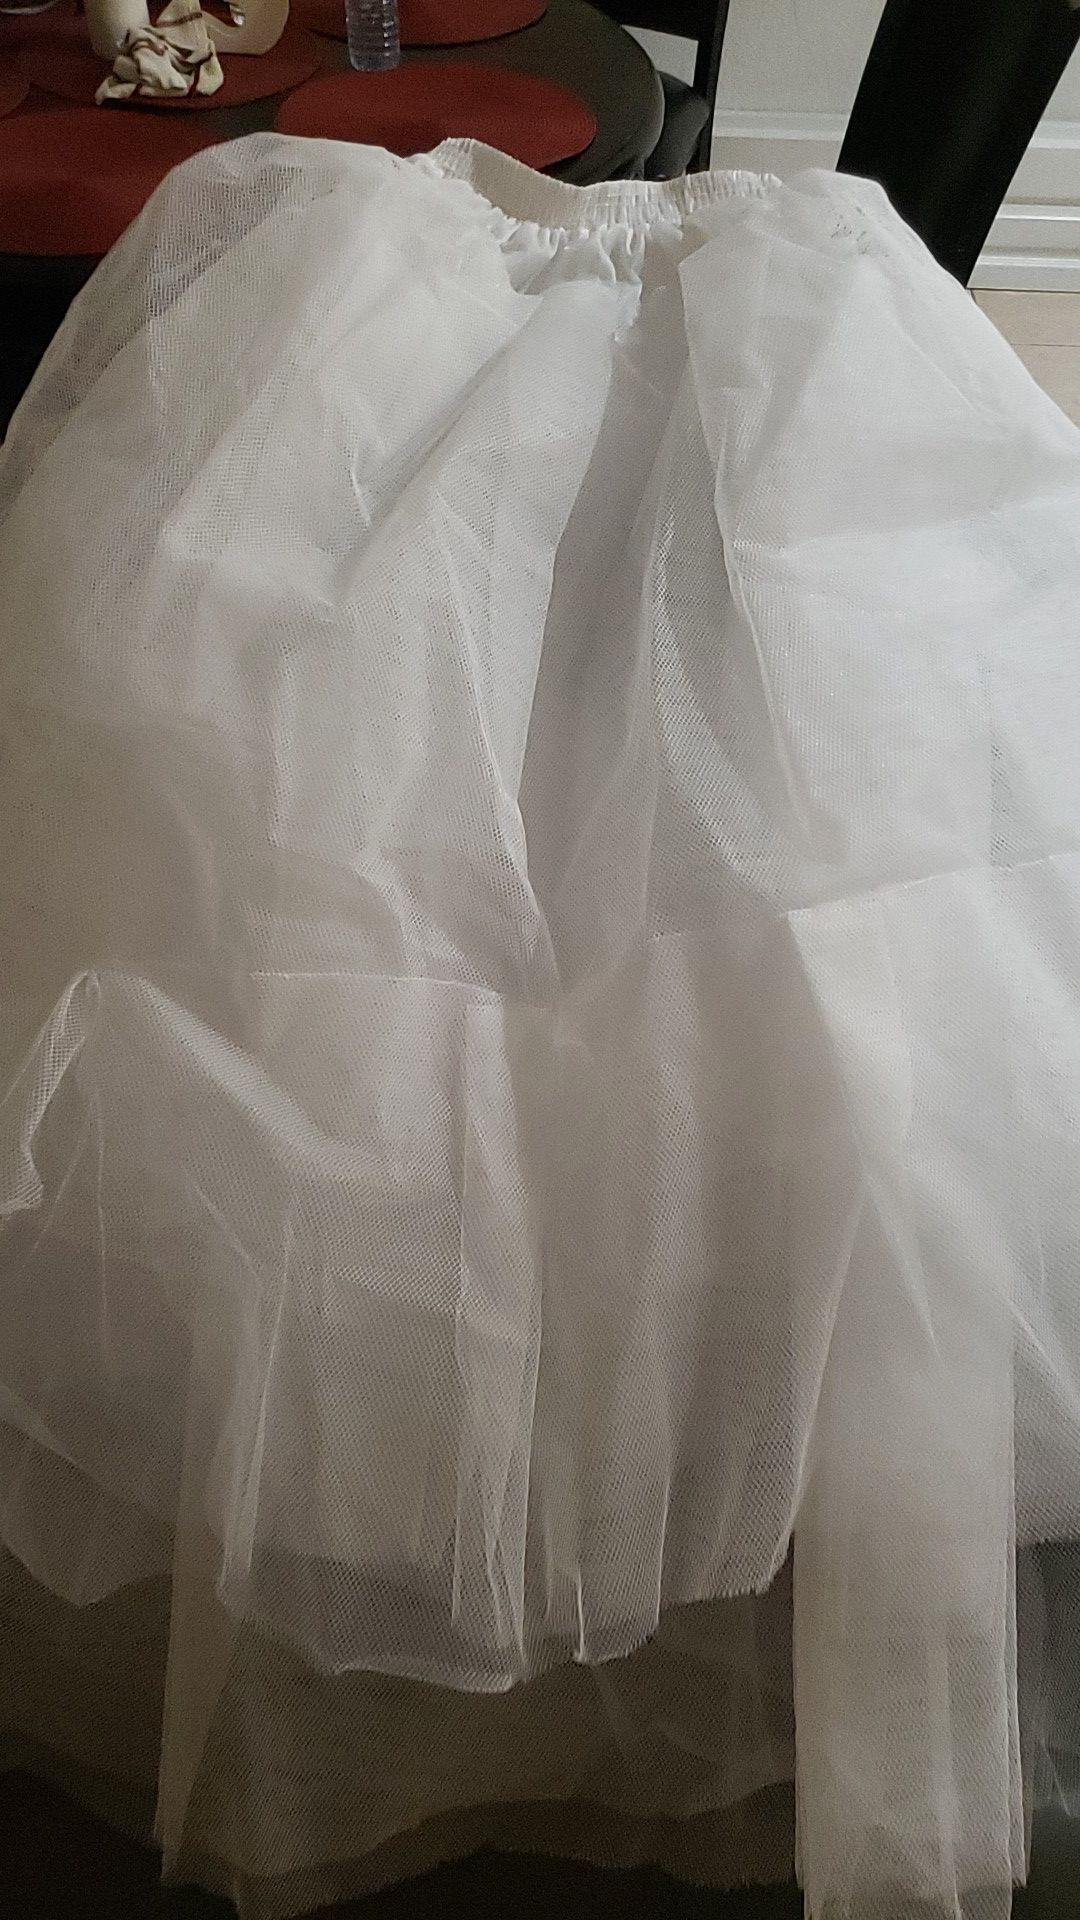 White taffeta petticoat for formal ballroom length dress